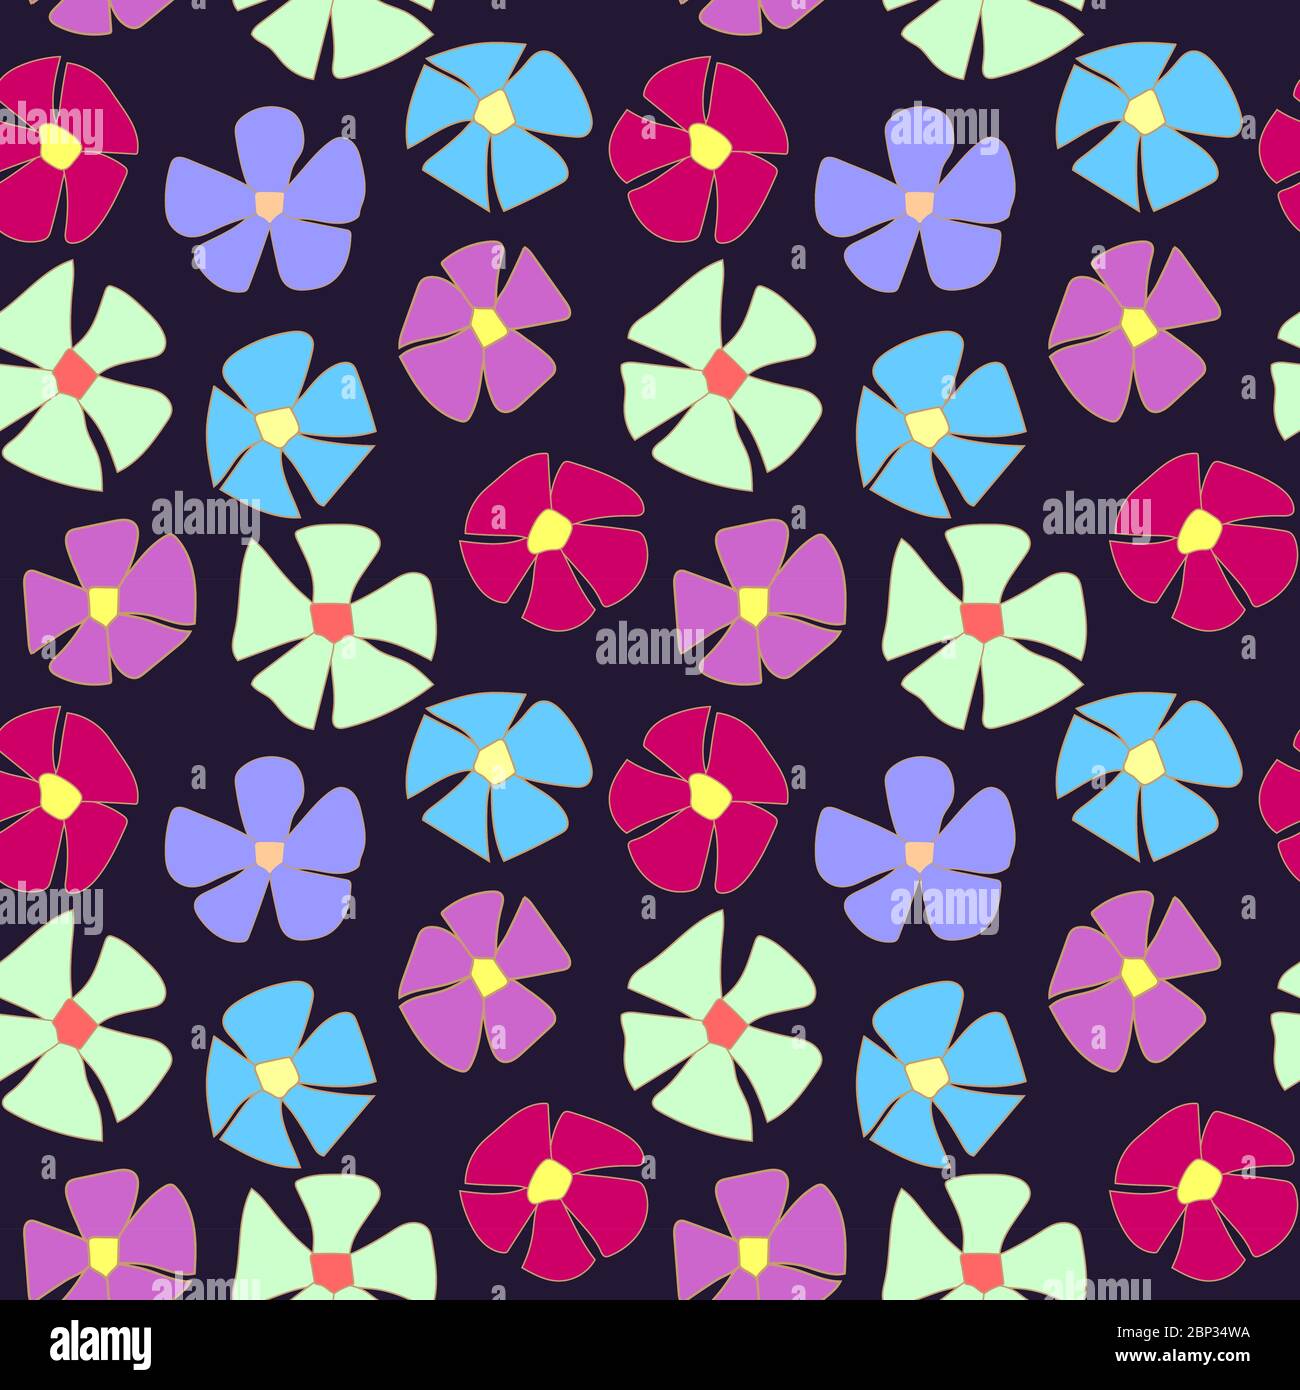 motif sans couture. de nombreuses fleurs simples à cinq pétales de violet, de lilas, de bleu, de bordeaux et de turquoise clair sur fond sombre. Illustration de Vecteur